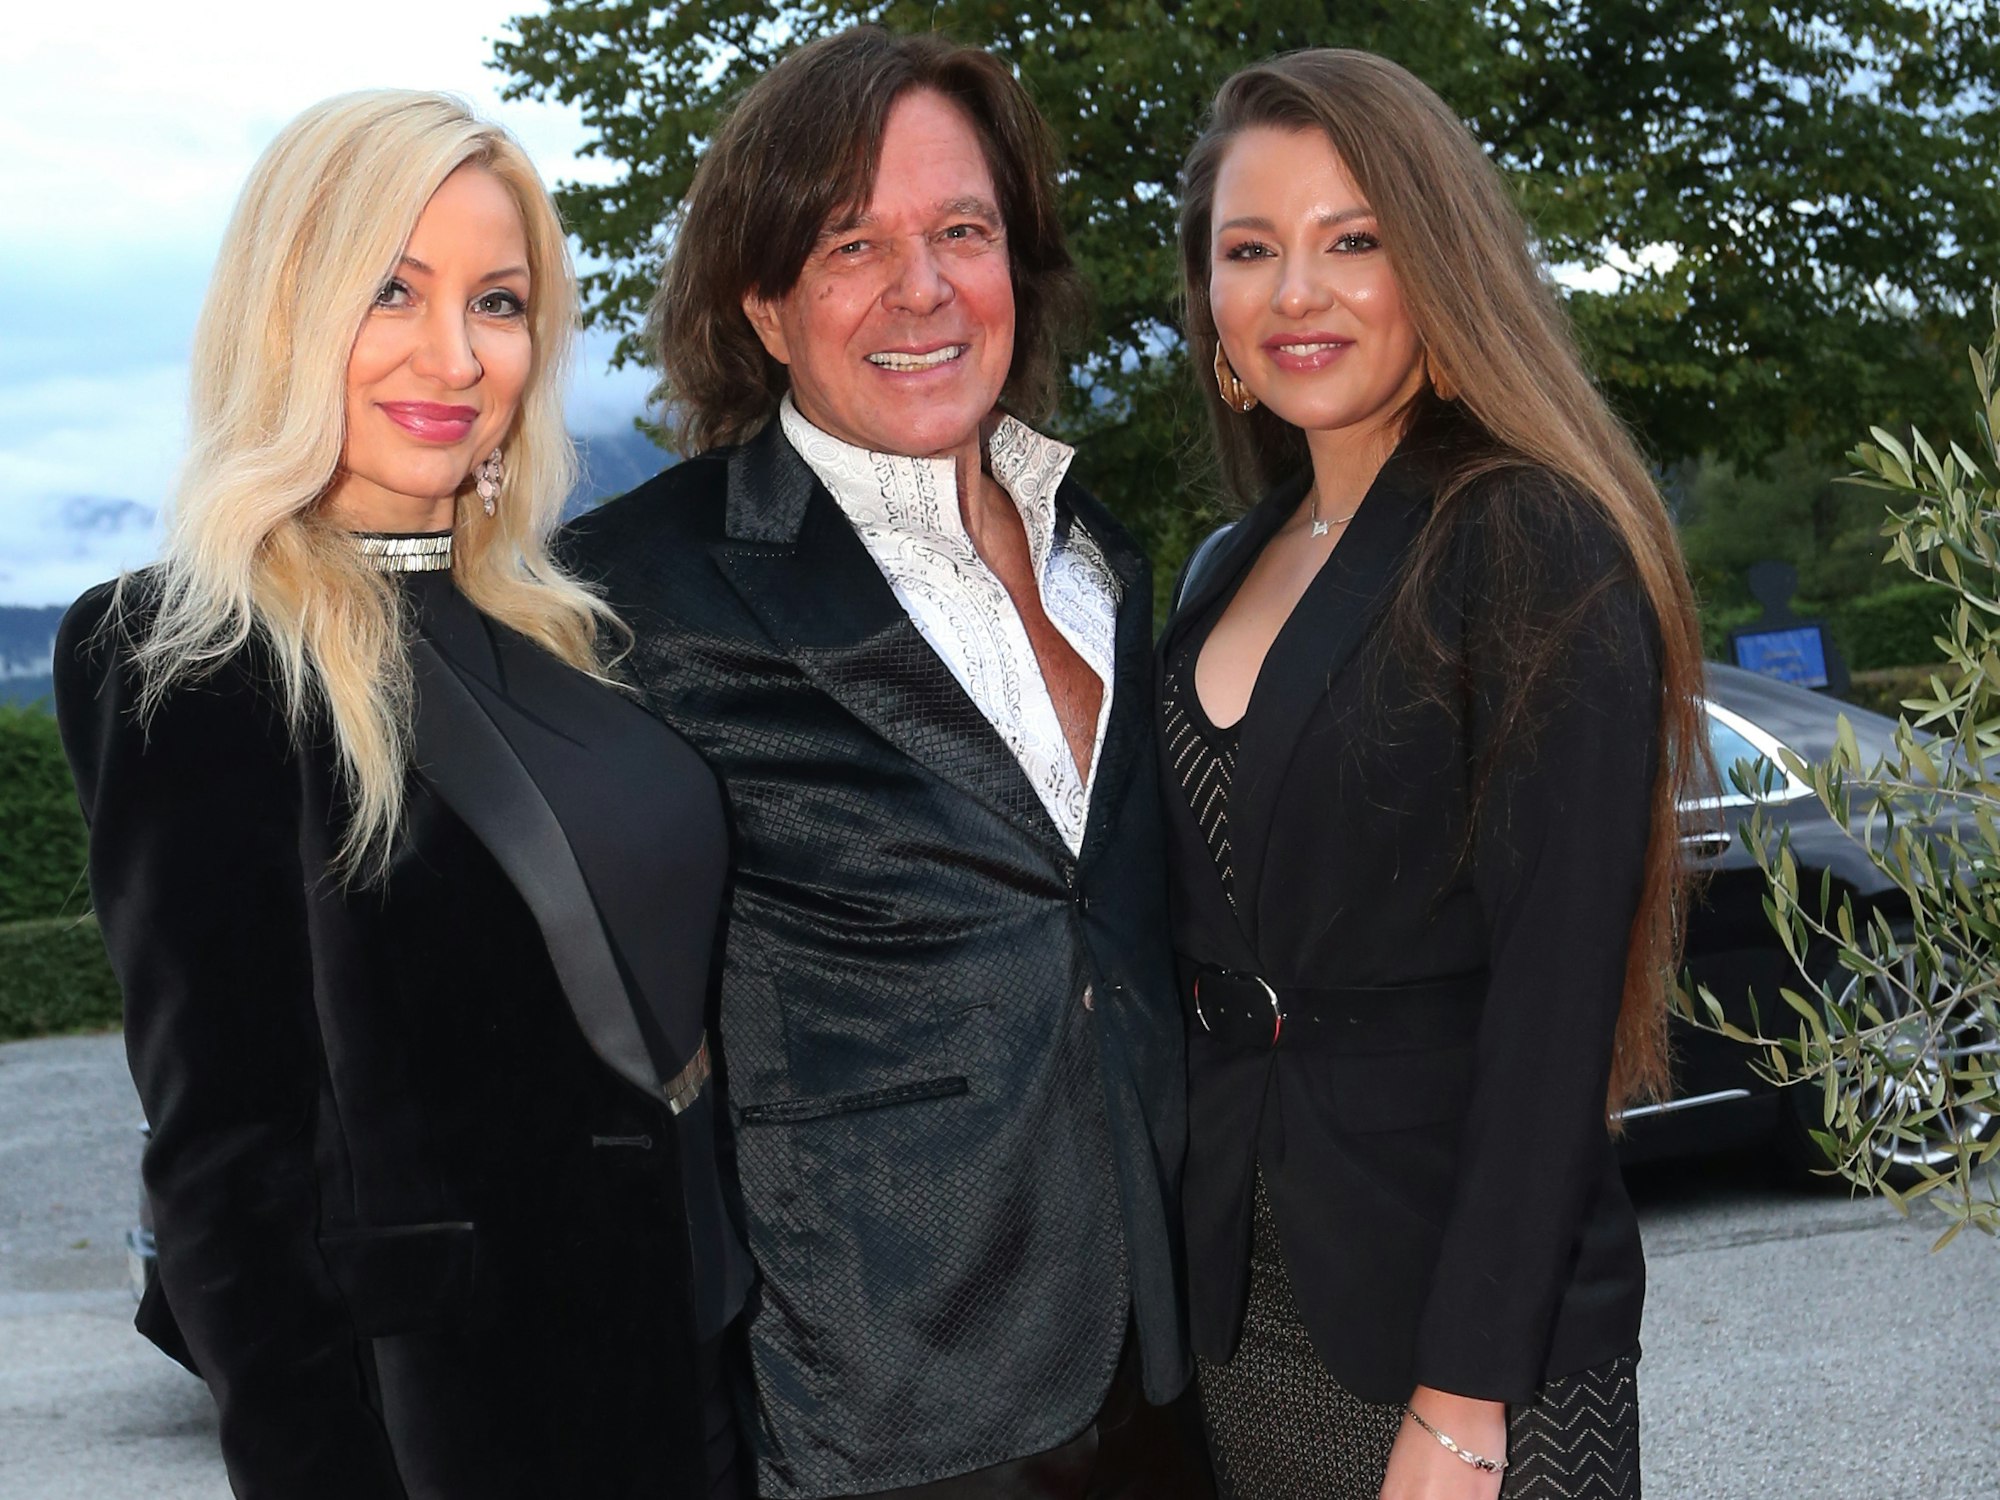 Sänger Jürgen Drews steht mit Ehefrau Ramona (l) und Tochter Joelina im Festspielhaus vor den Fotografen